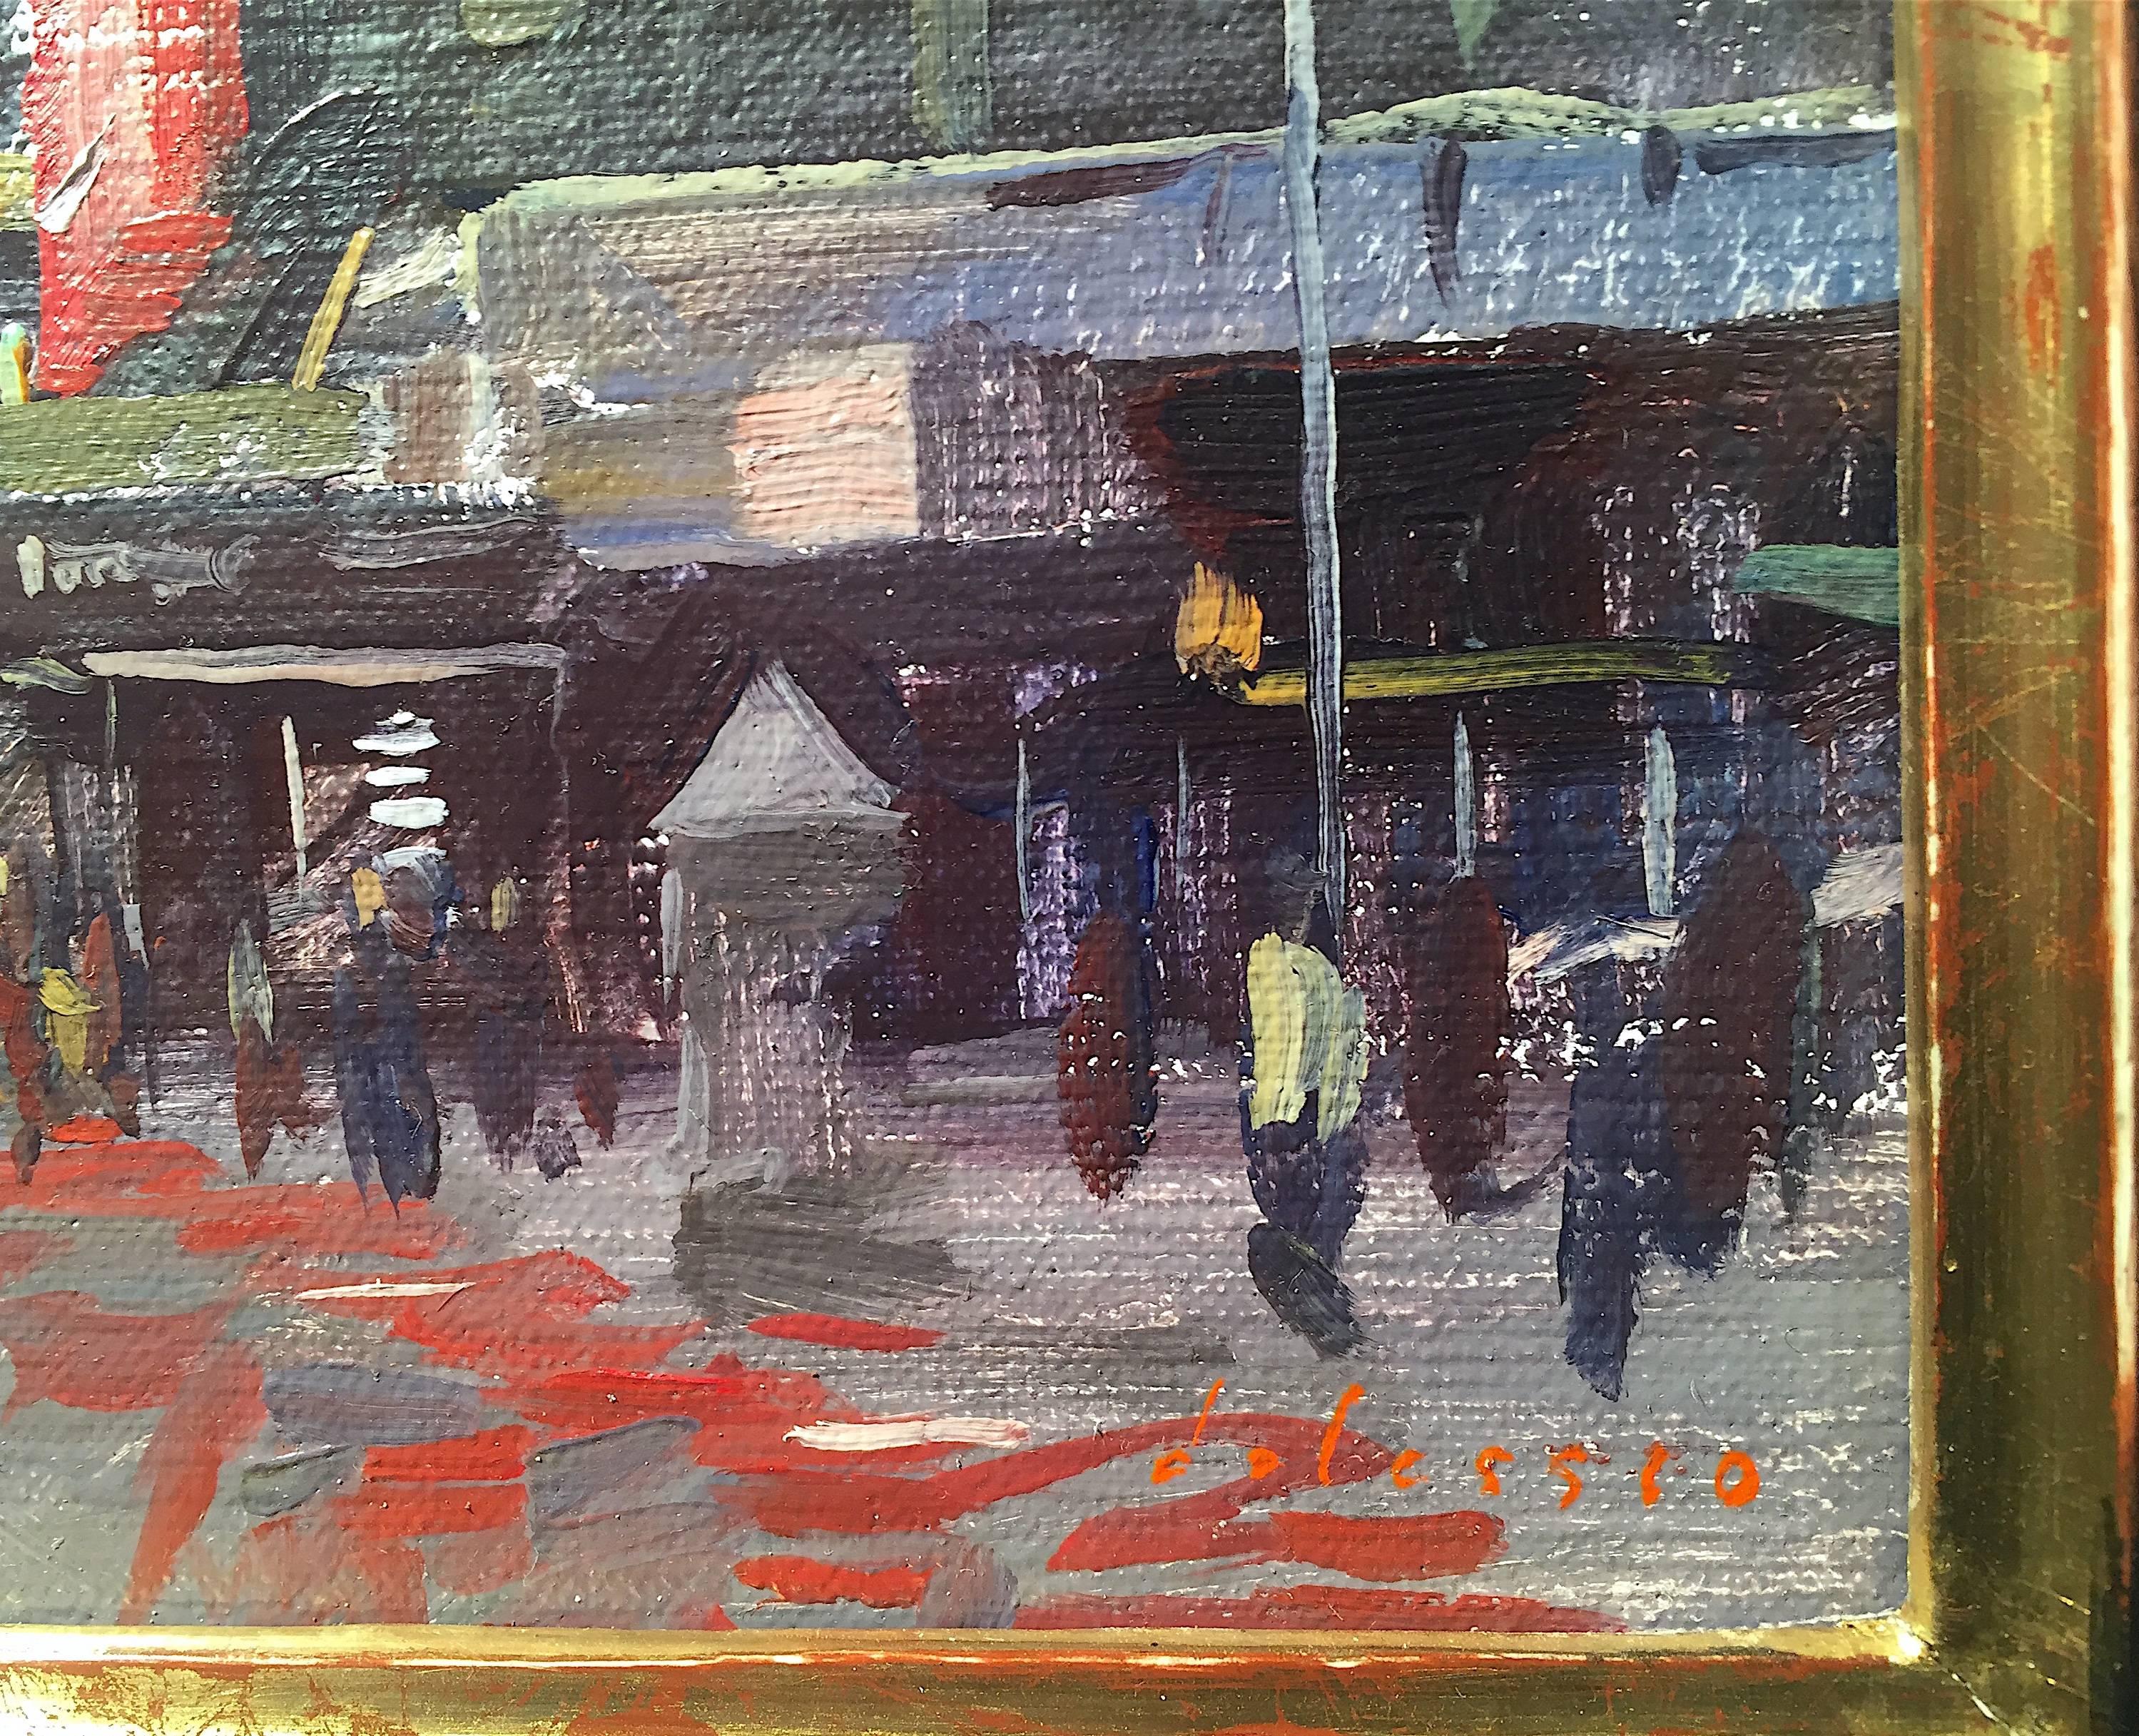 Ein traditionelles Pleinair-Gemälde einer belebten Stadtlandschaft.

Marc Dalessio wurde 1972 in Los Angeles, Kalifornien, geboren. Schon in seinen ersten Lebensjahren war klar, dass seine Leidenschaft der Kunst galt. 1989 begann er ein Studium an